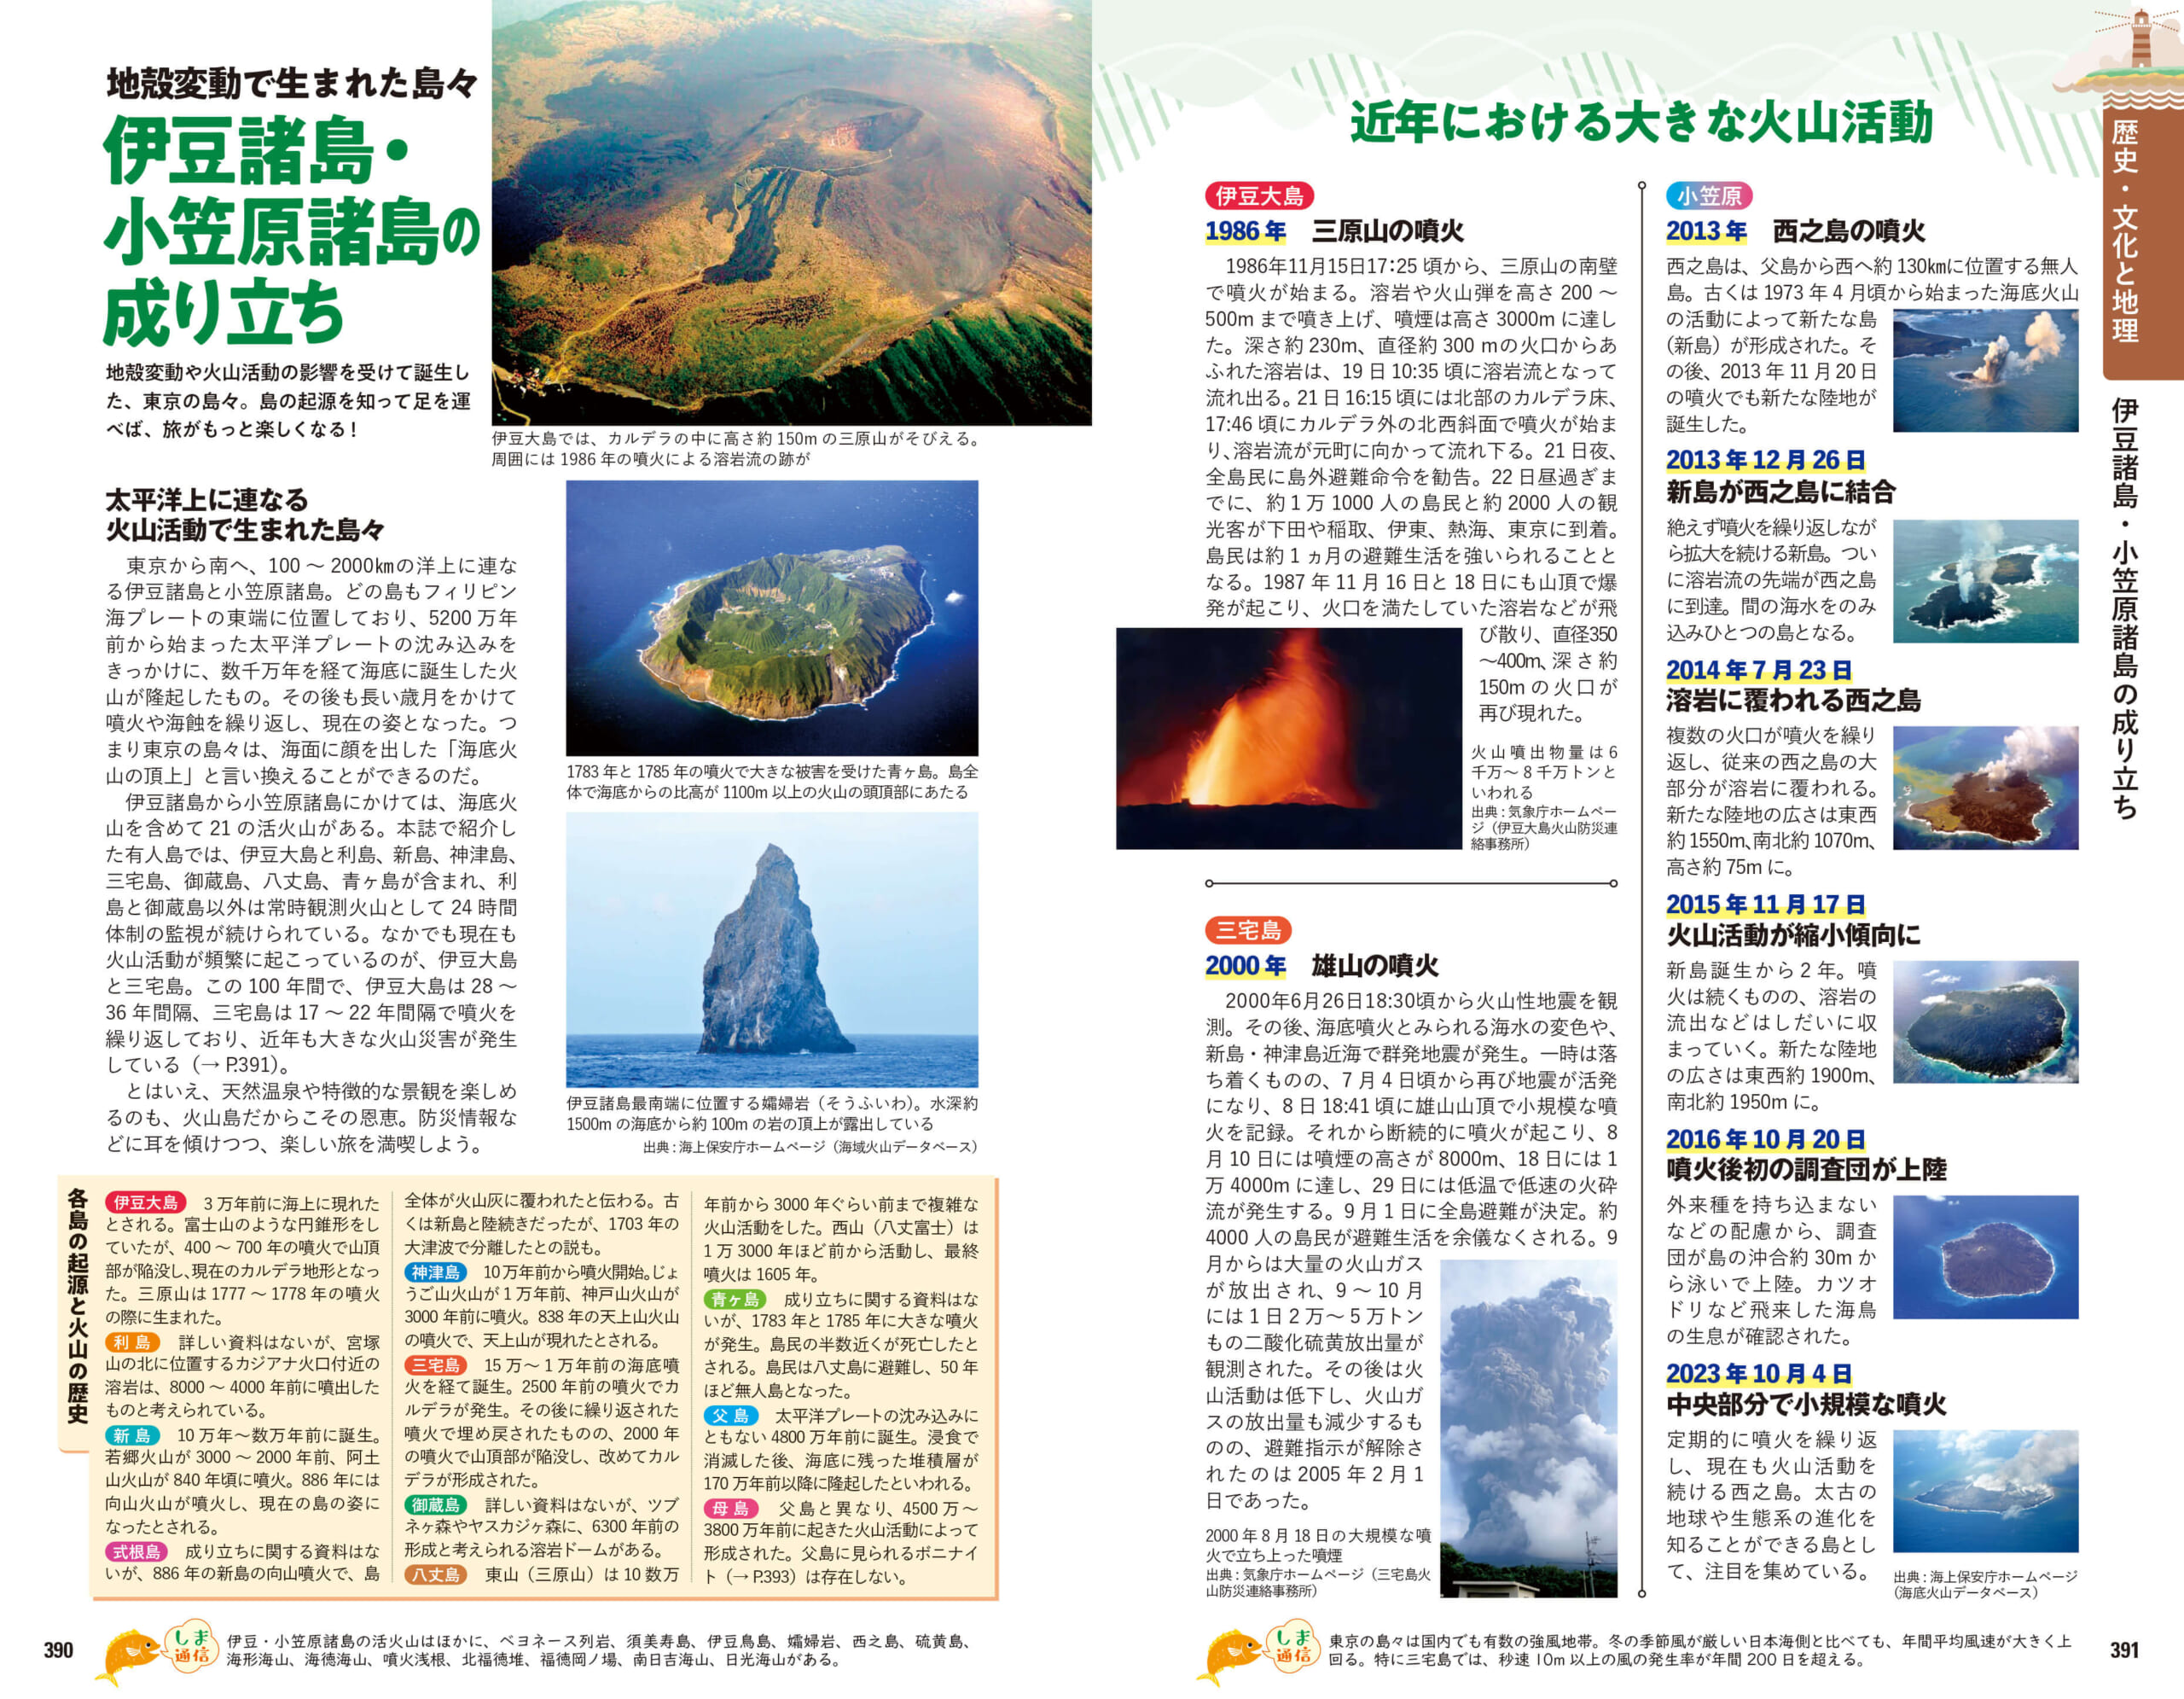 「地殻変動や火山活動の影響を受けて誕生した東京諸島。近年の火山の様子も紹介」紙面